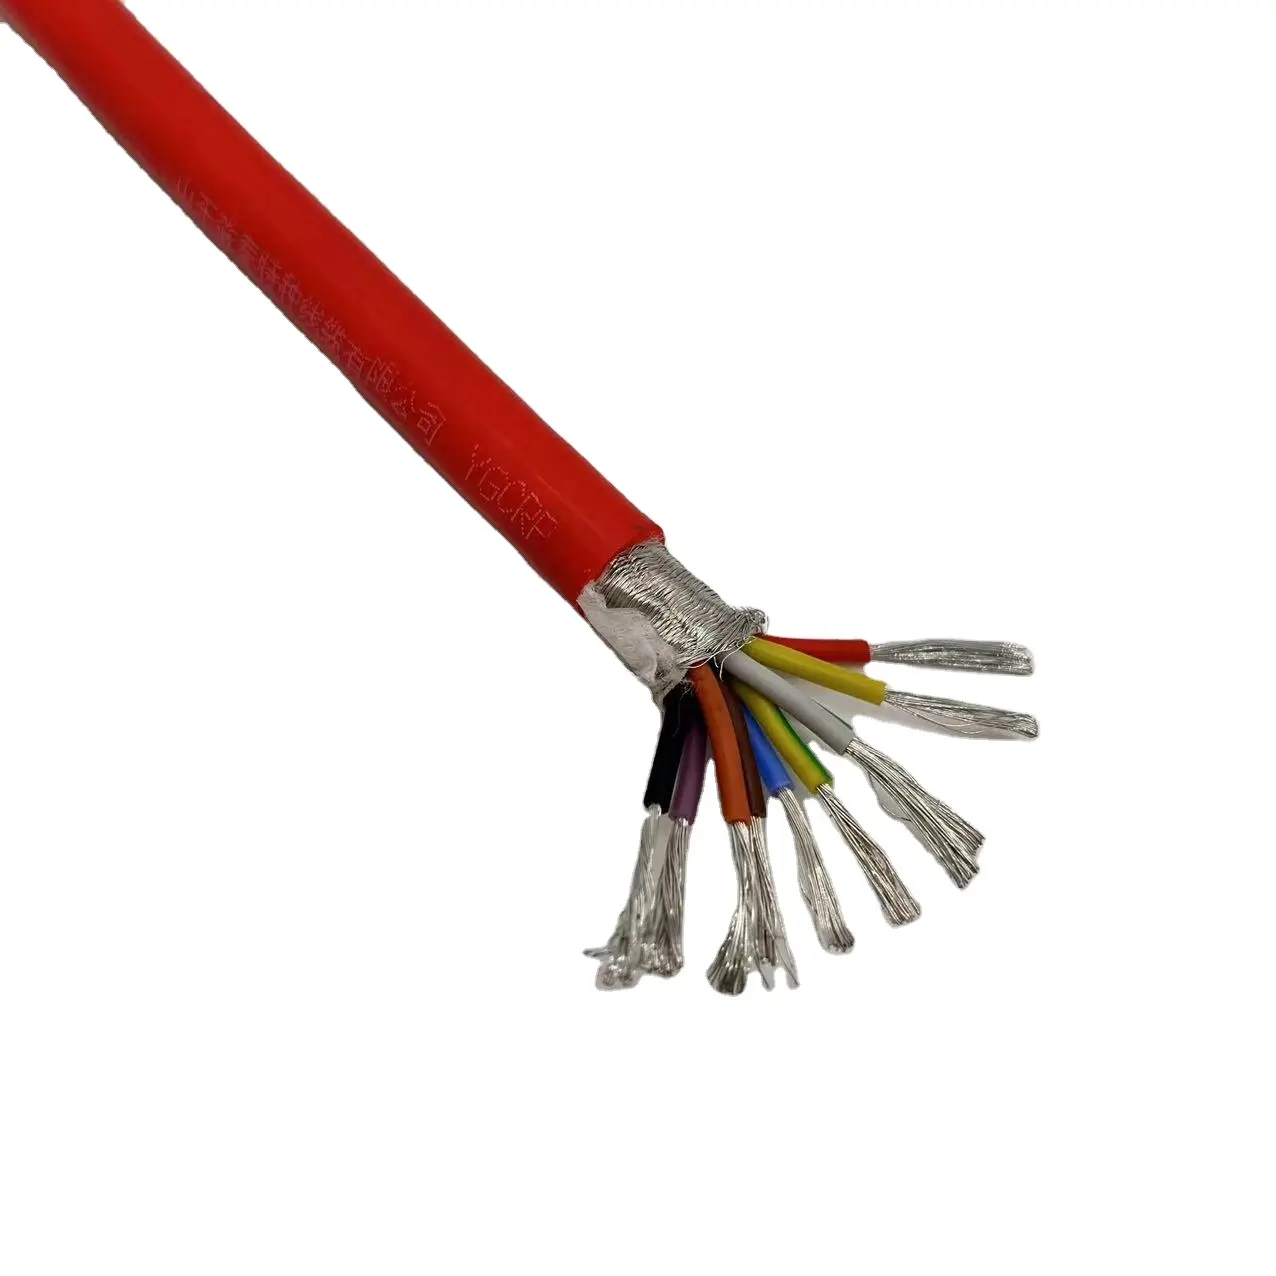 Kabel silikon fleksibel standar nasional kabel tahan suhu tinggi dengan pelindung YGCRP 10*1.5 kaki persegi